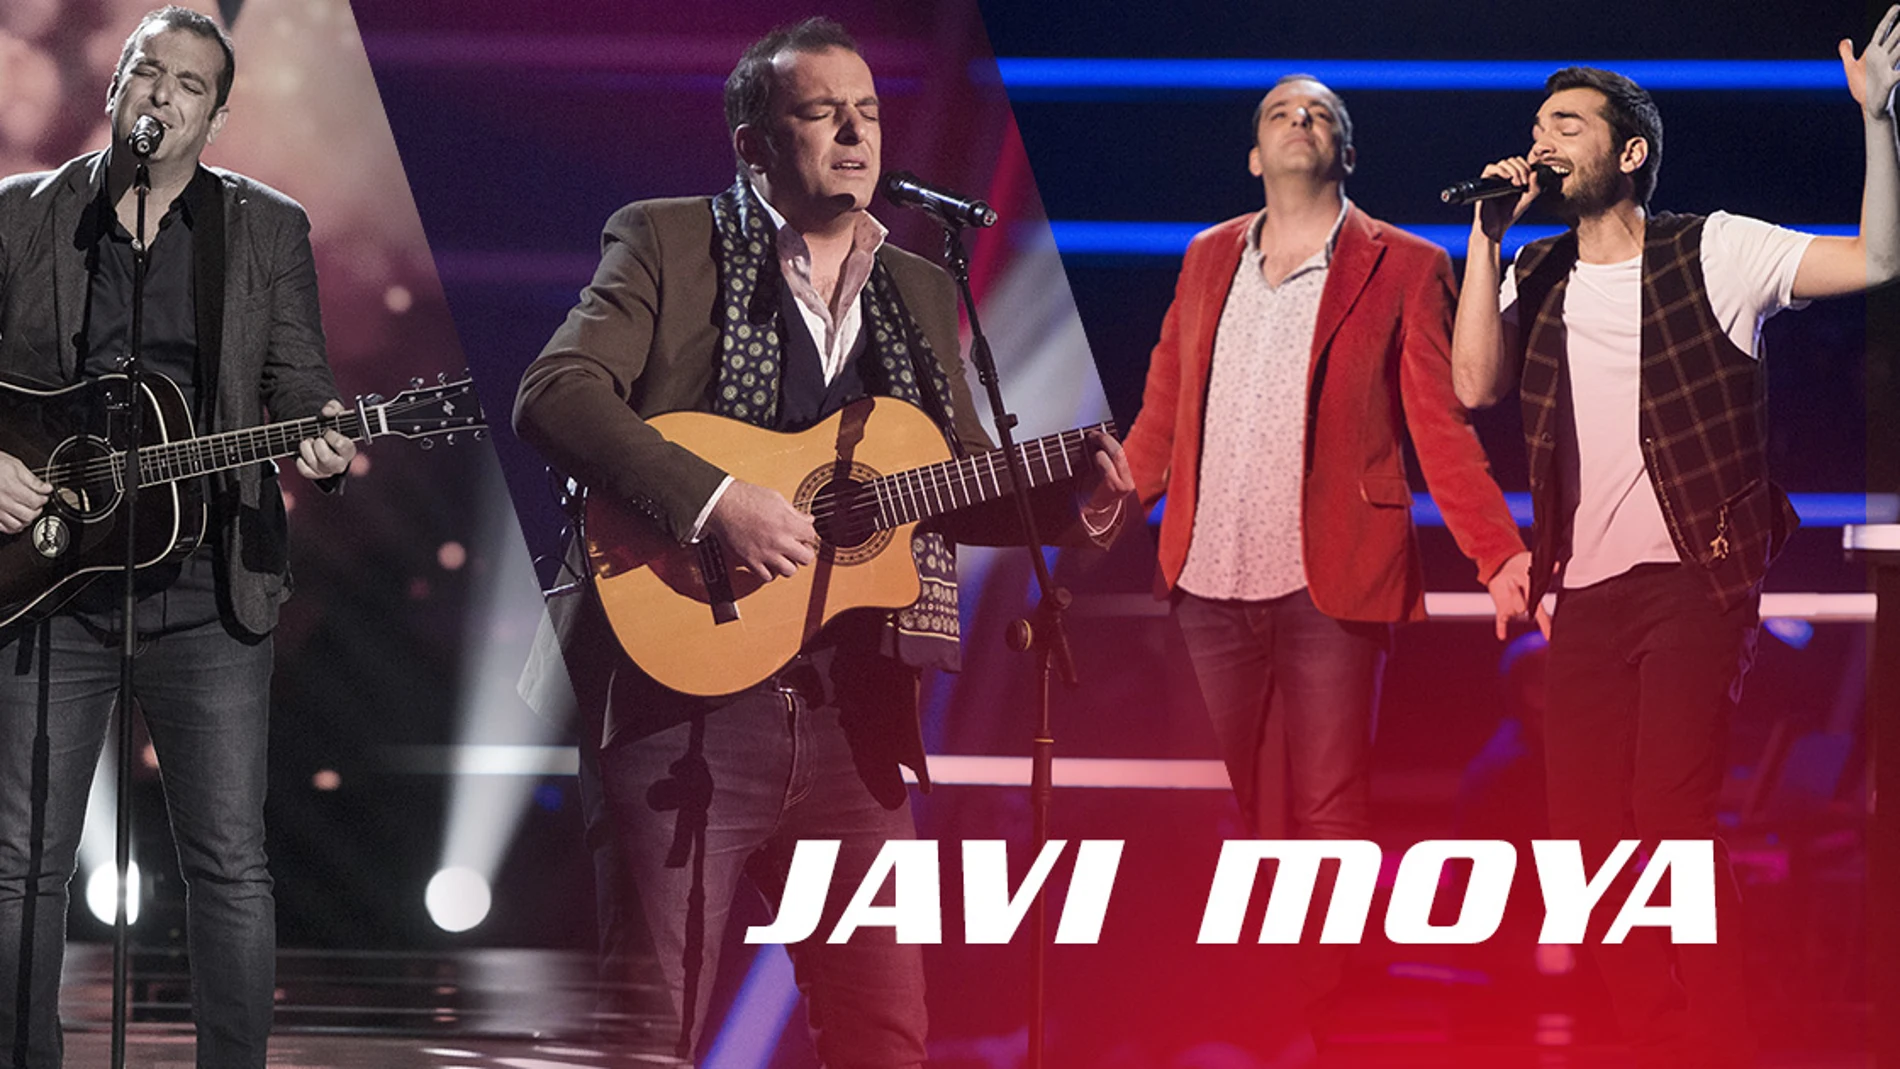 VÍDEO: Así han sido las actuaciones de Javi Moya en ‘La Voz’